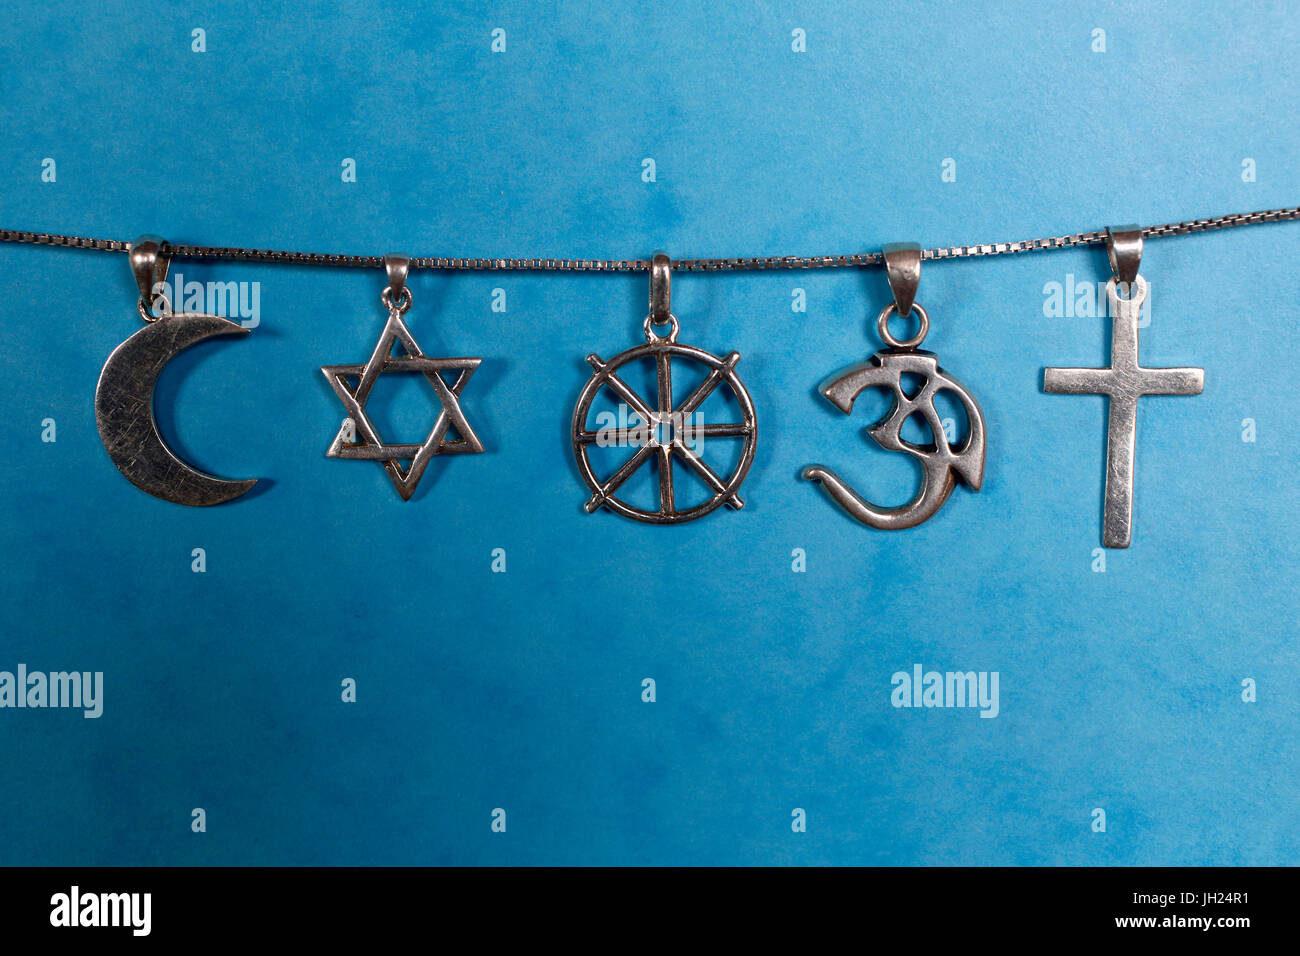 Symboles de l'islam, le judaïsme, le bouddhisme, l'hindouisme et le christianisme. Banque D'Images